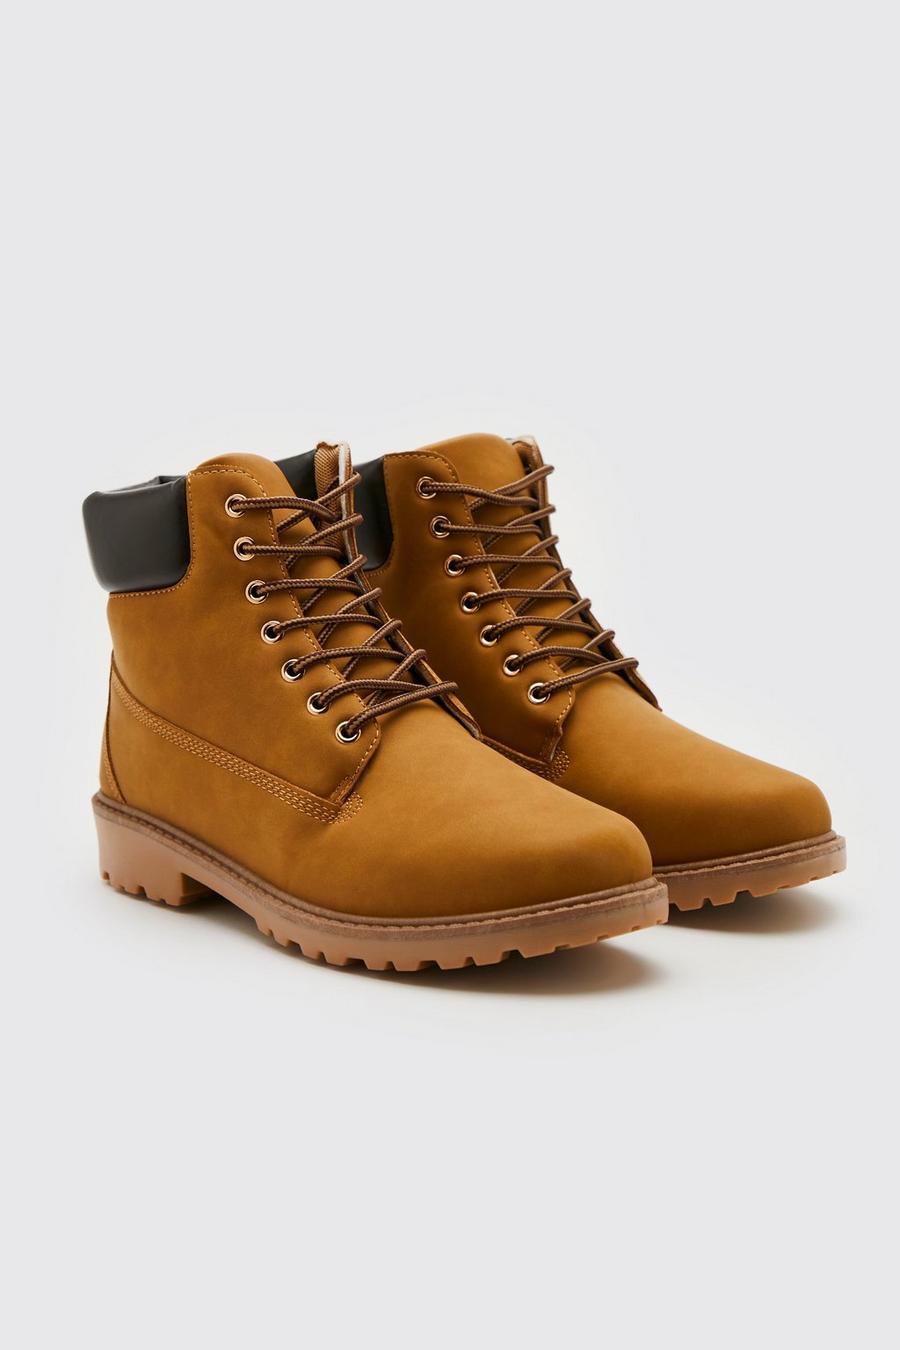 Worker Boots, Lohbraun brown